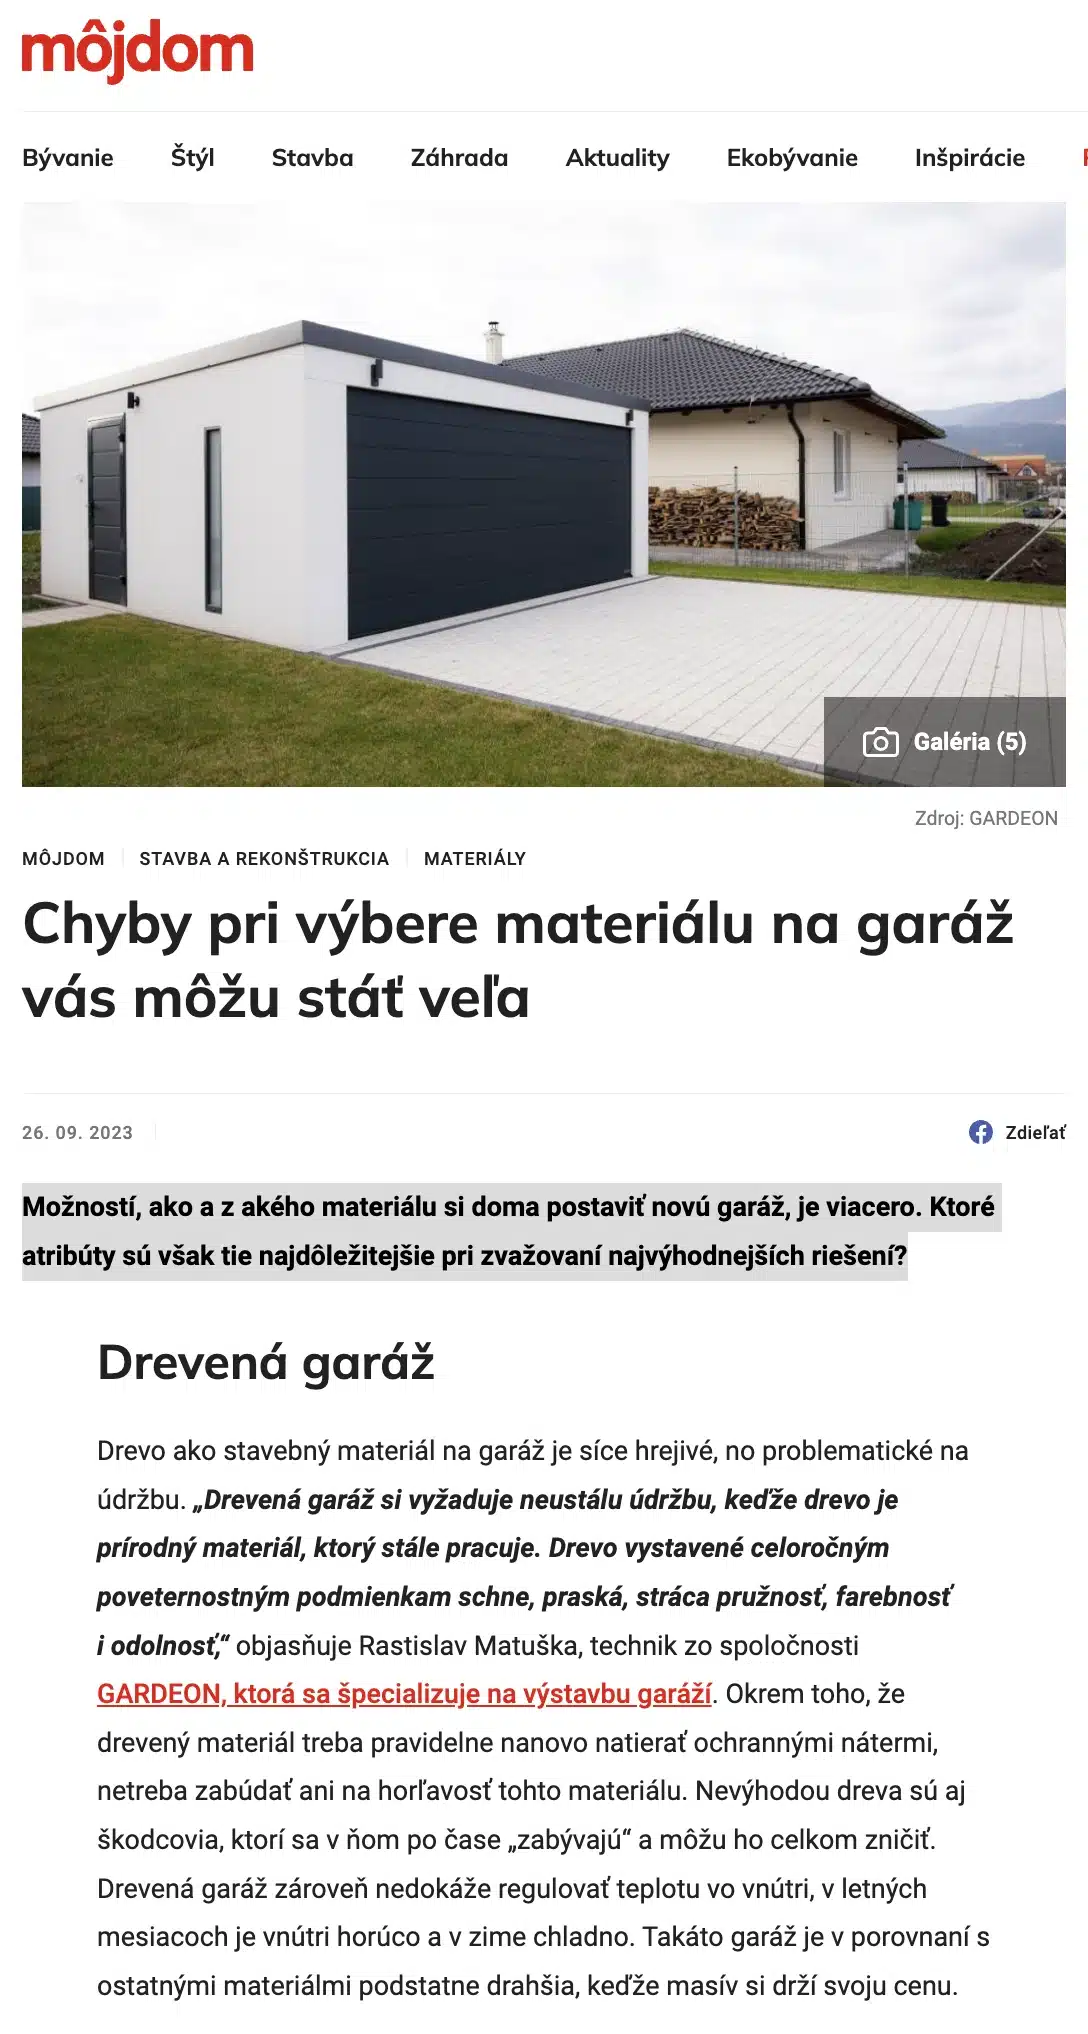 Článok o nás na portáli môjdom.sk